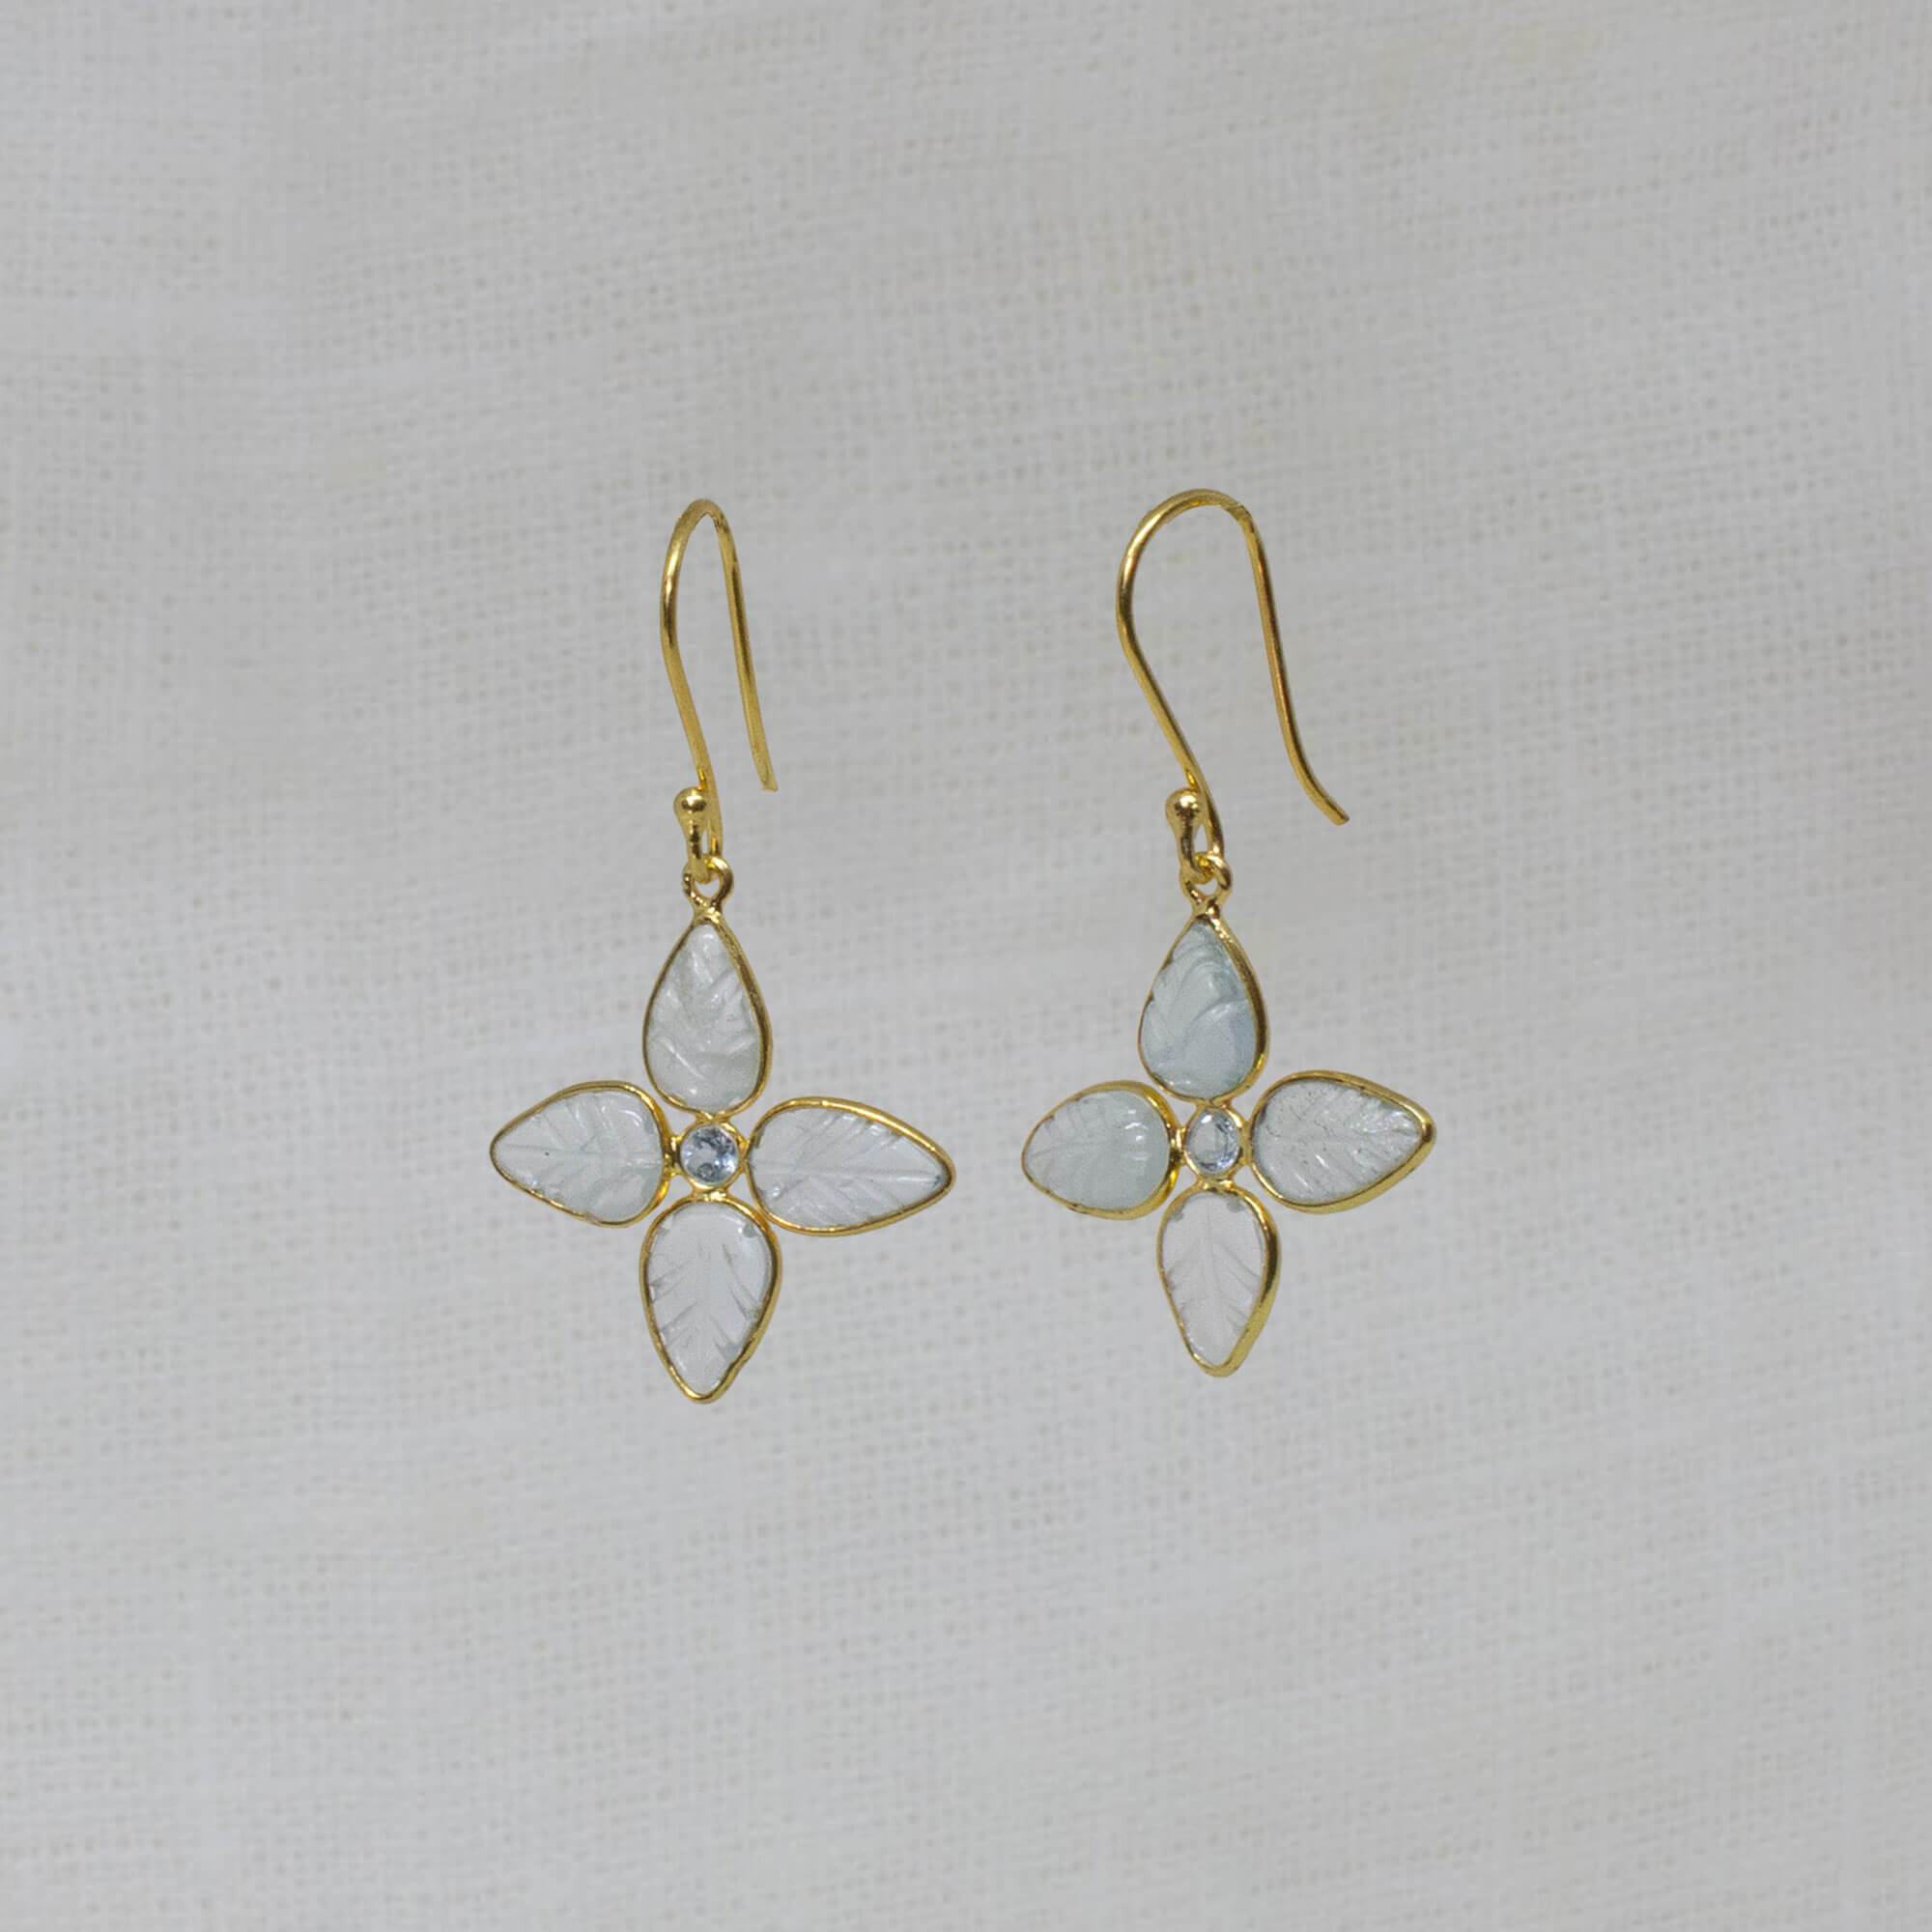 Carved aquamarine gemstone flower earrings in 18k gold vermeil - Beyond Biasa